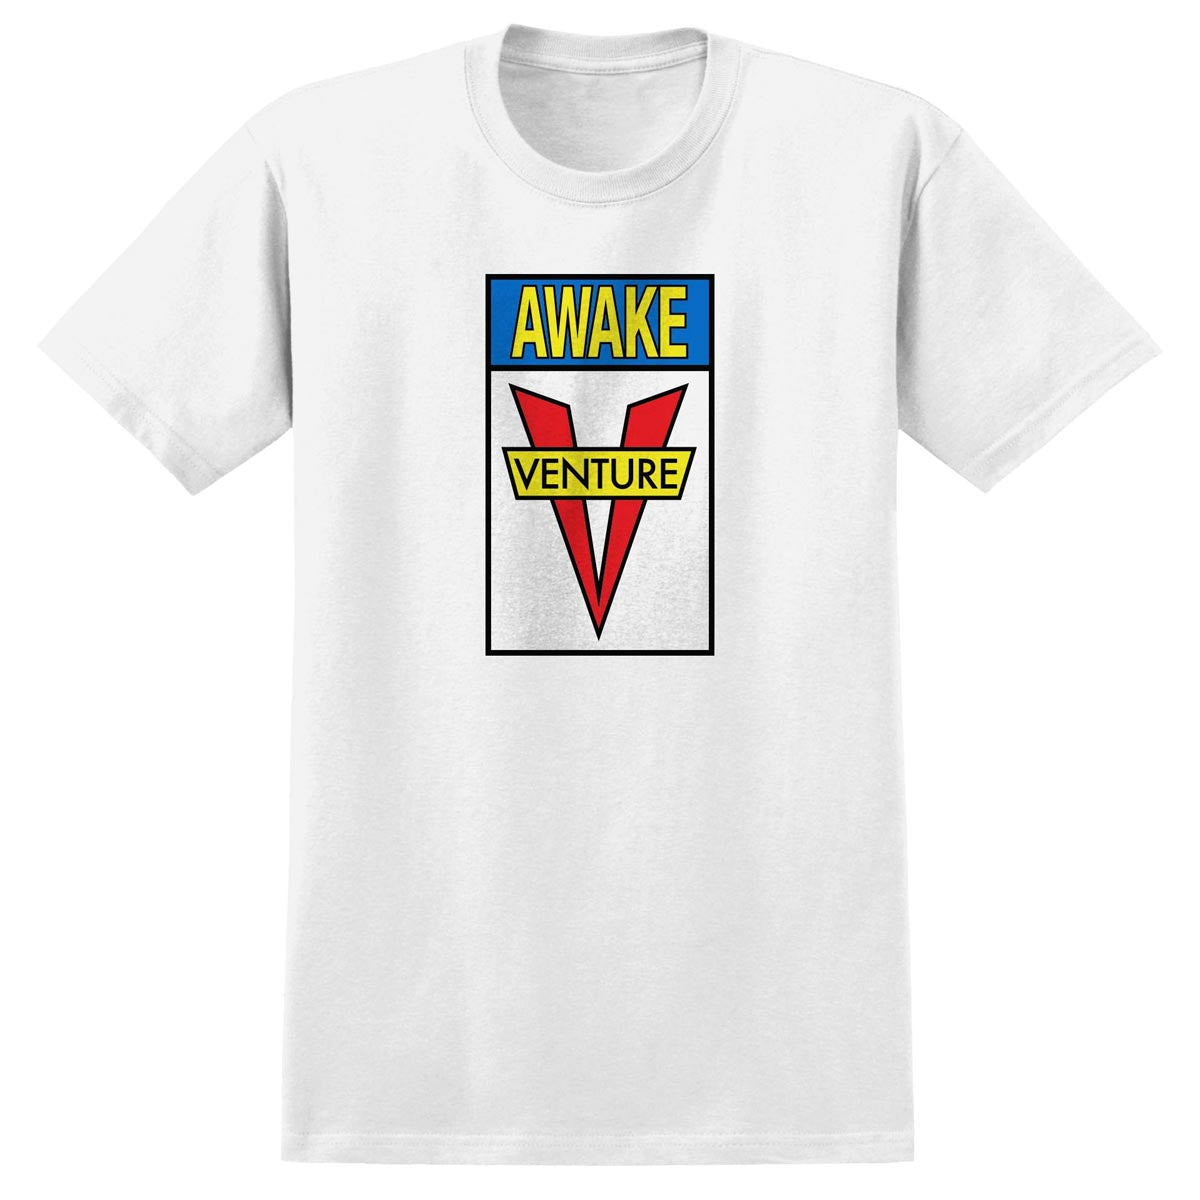 Venture Awake T-Shirt - White/Blue/Yellow/Red image 1